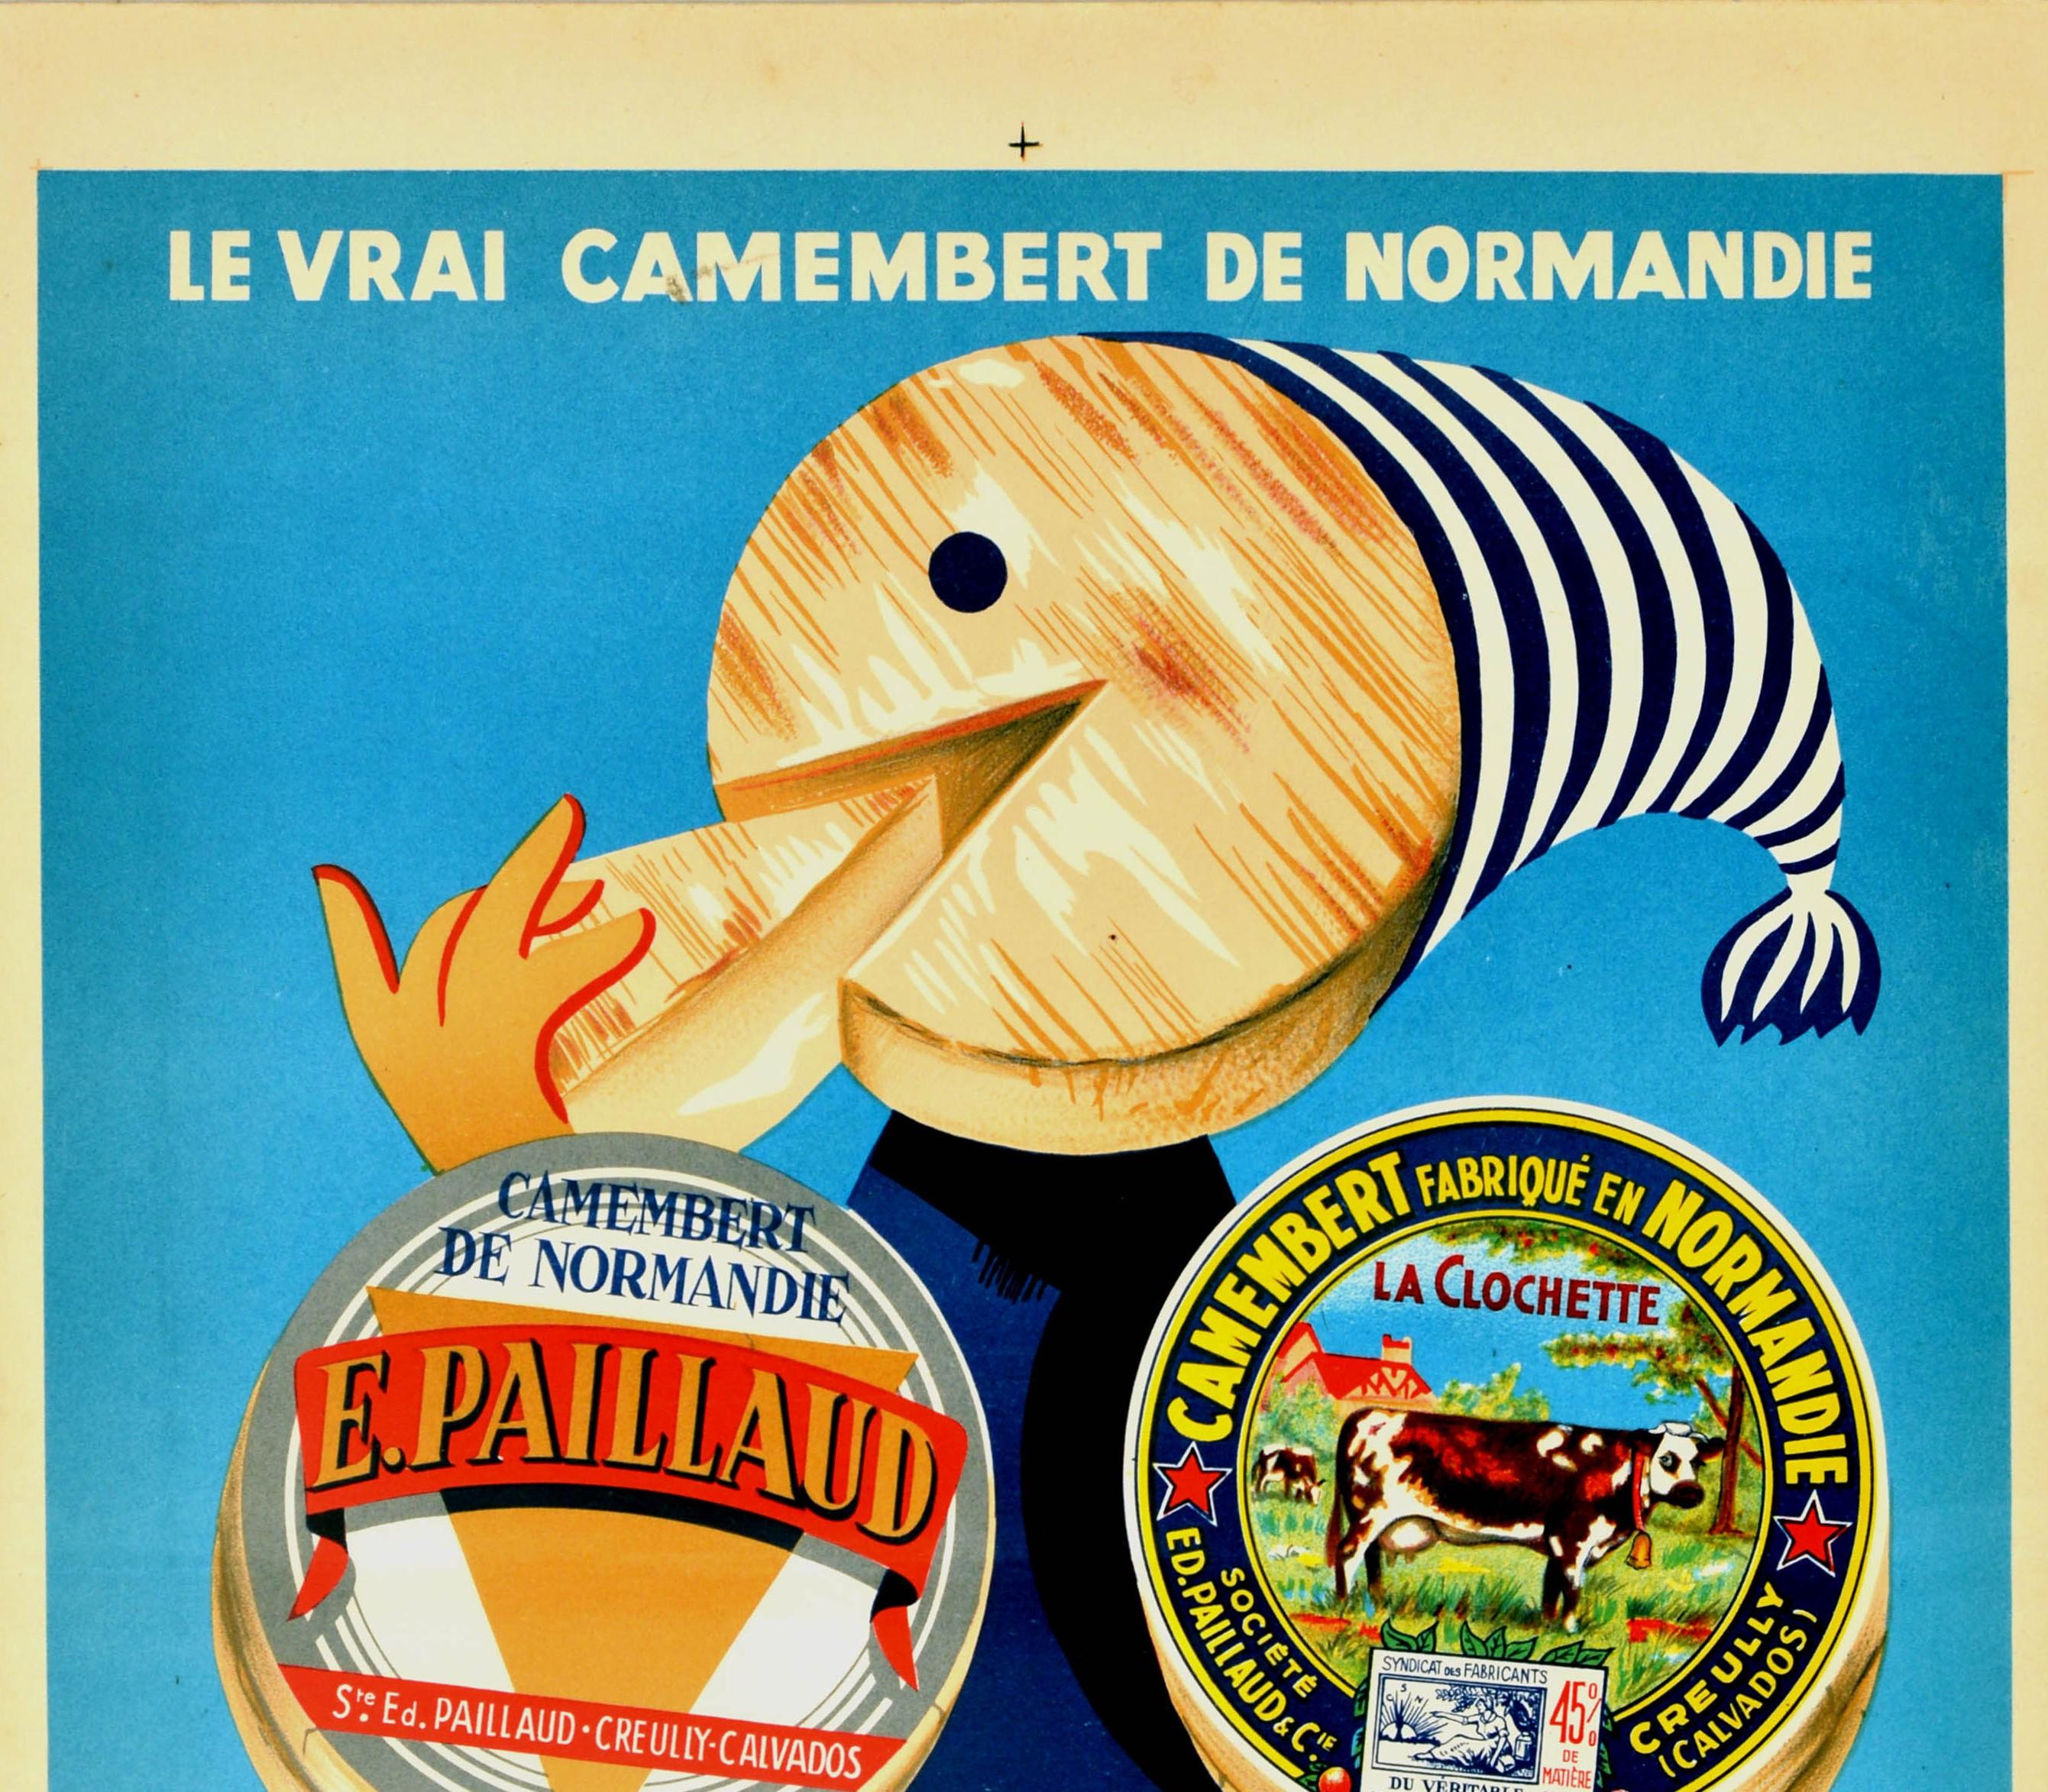 Original Vintage-Werbeplakat für einen französischen Käse - Le vrai camembert de Normandie E. Paillaud / Der echte Camembert aus der Normandie E. Paillaud - mit lustiger Zeichnung einer lächelnden Cartoon-Figur, die von einem Käselaib gebildet wird,